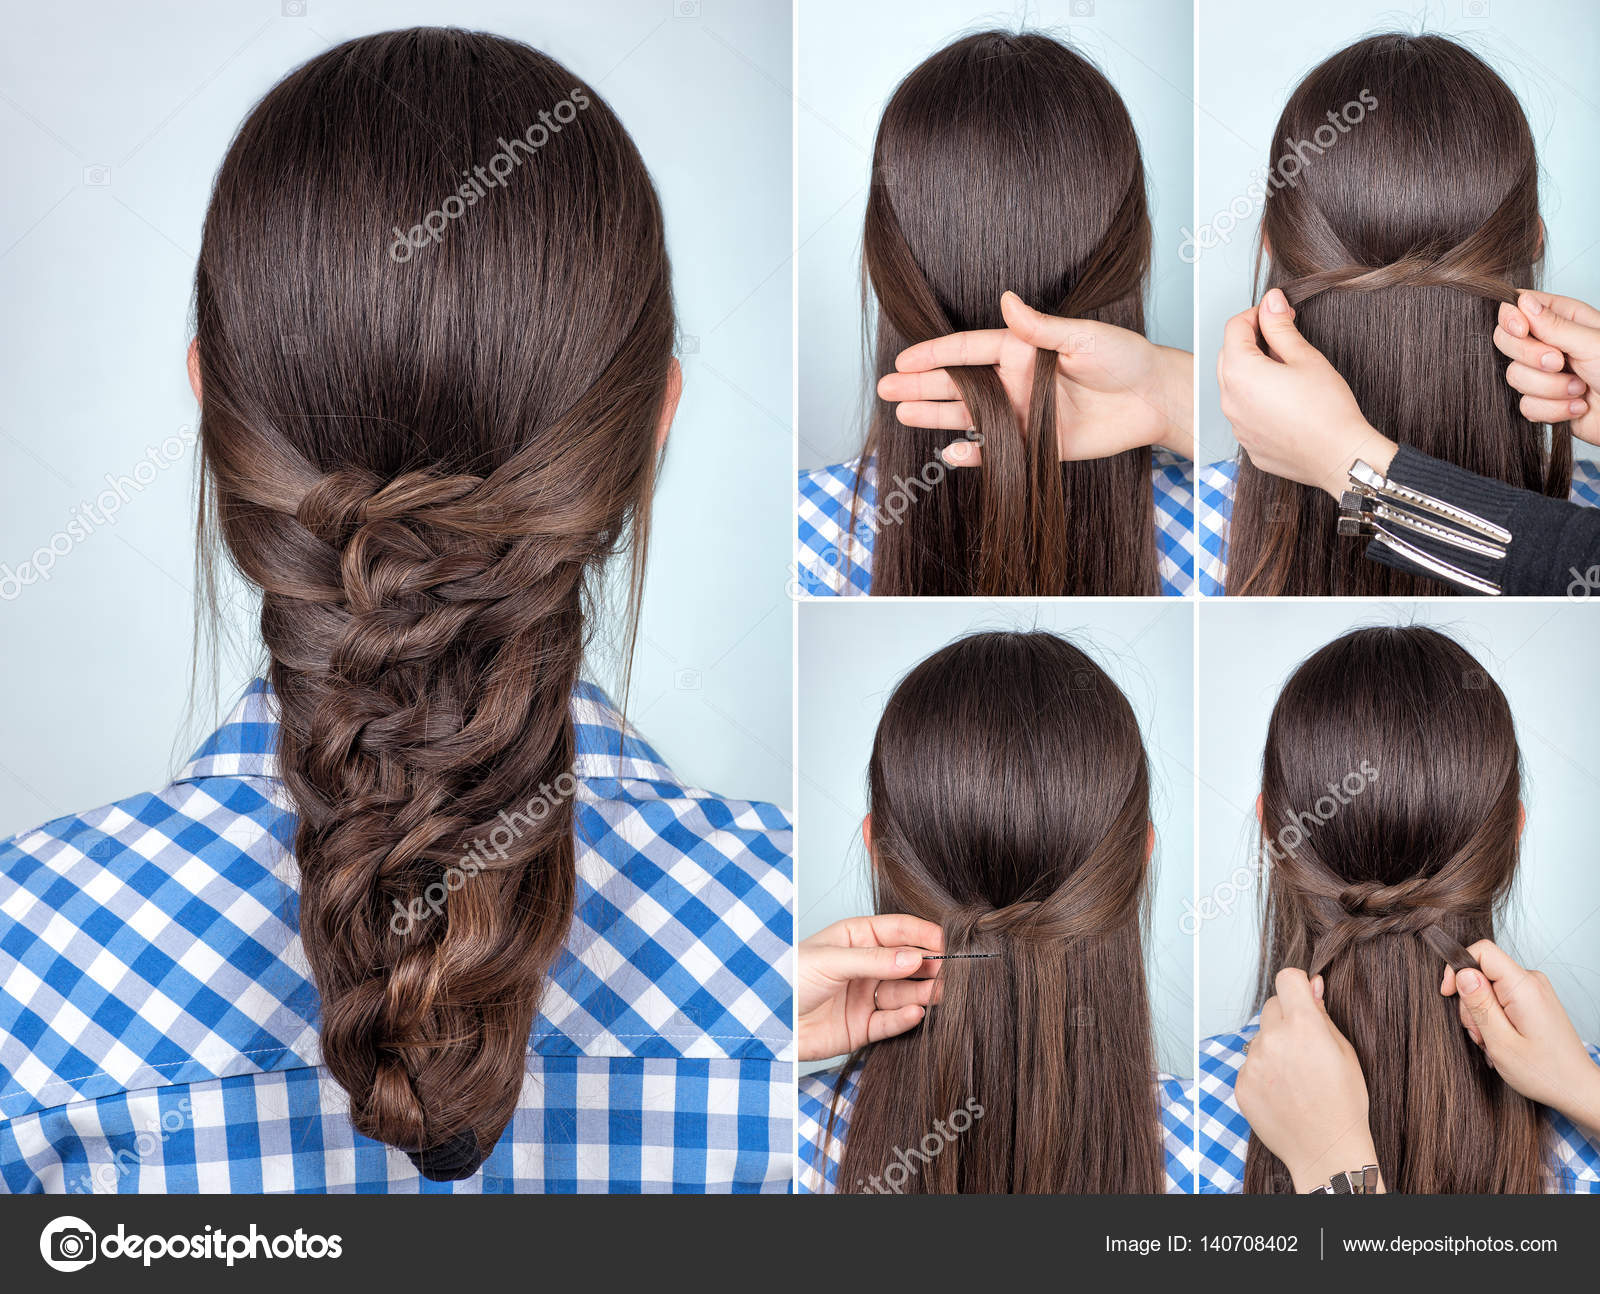 30 Easy Hairstyles for Long Hair with Simple Instructions - Hair Adviser |  Frisuren, Hochzeitsfrisuren lange haare, Mittellange haare frisuren einfach